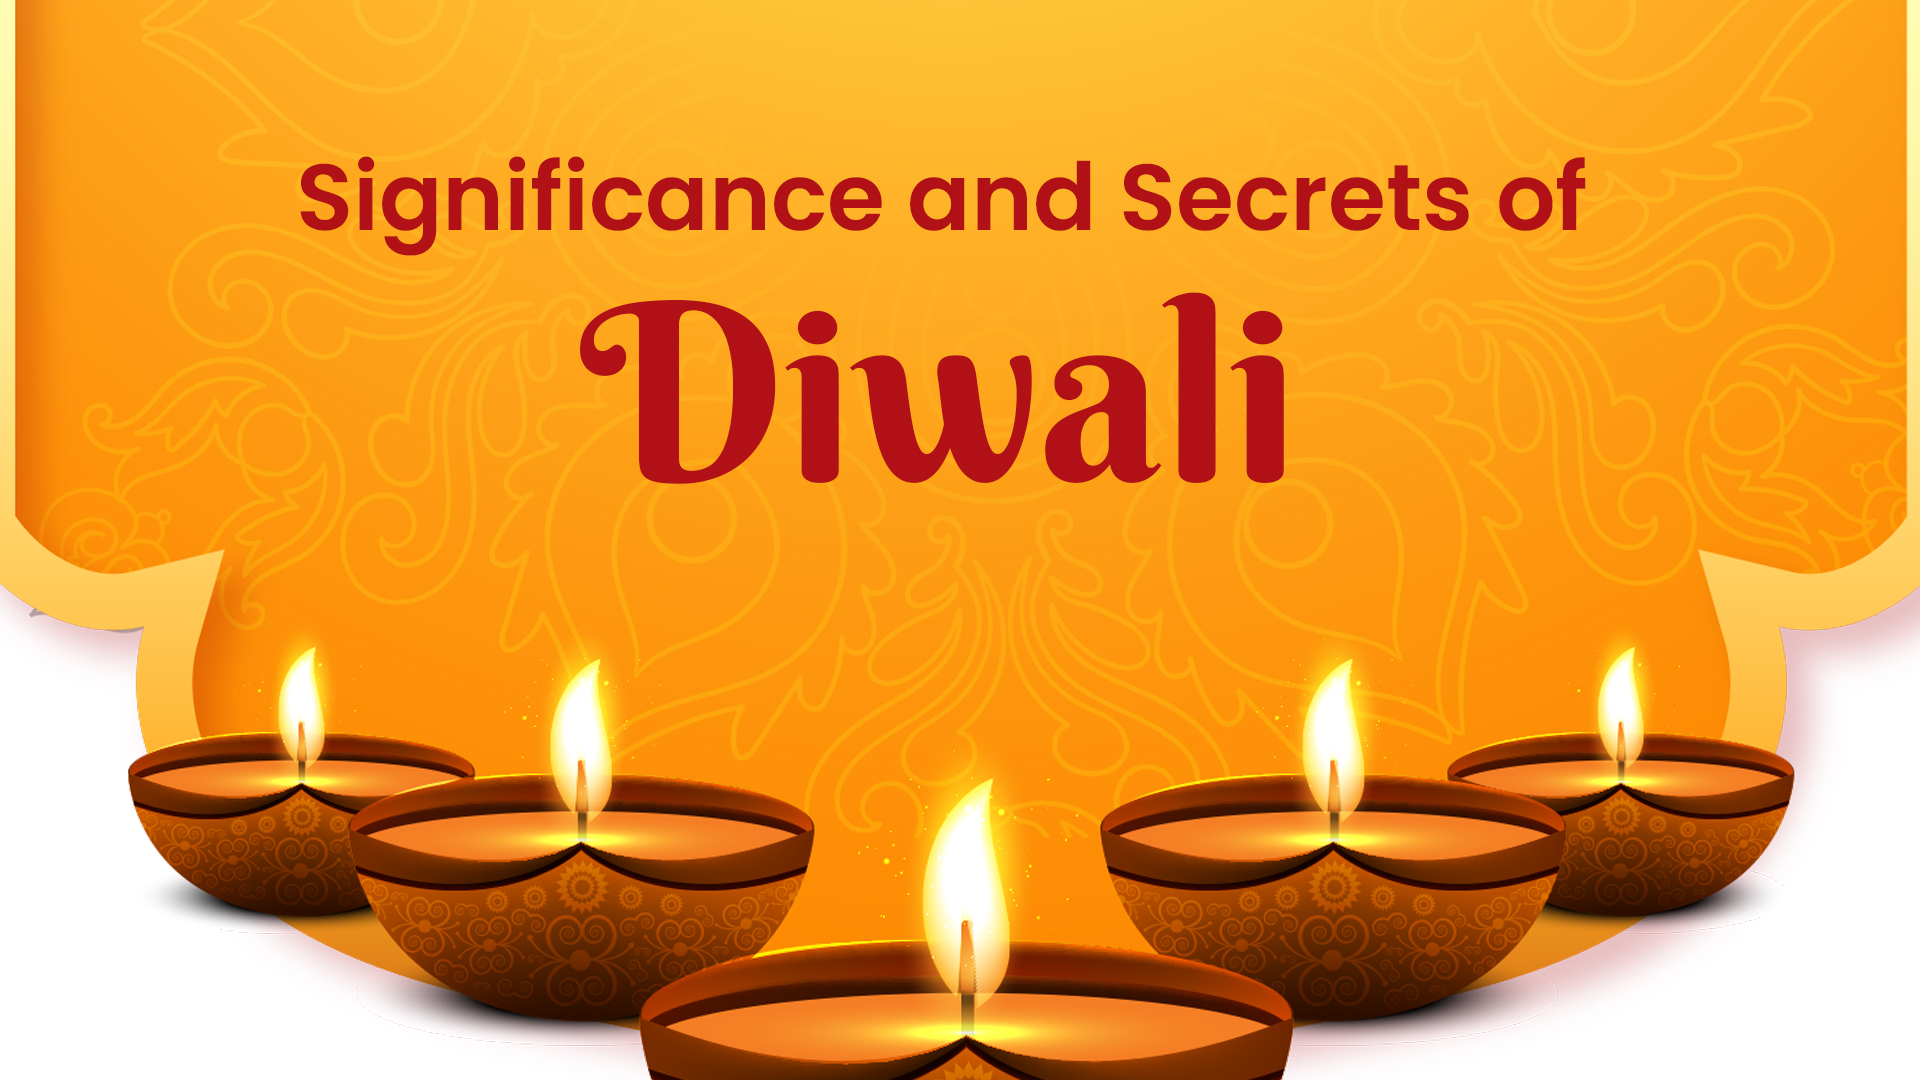 secrets of diwali